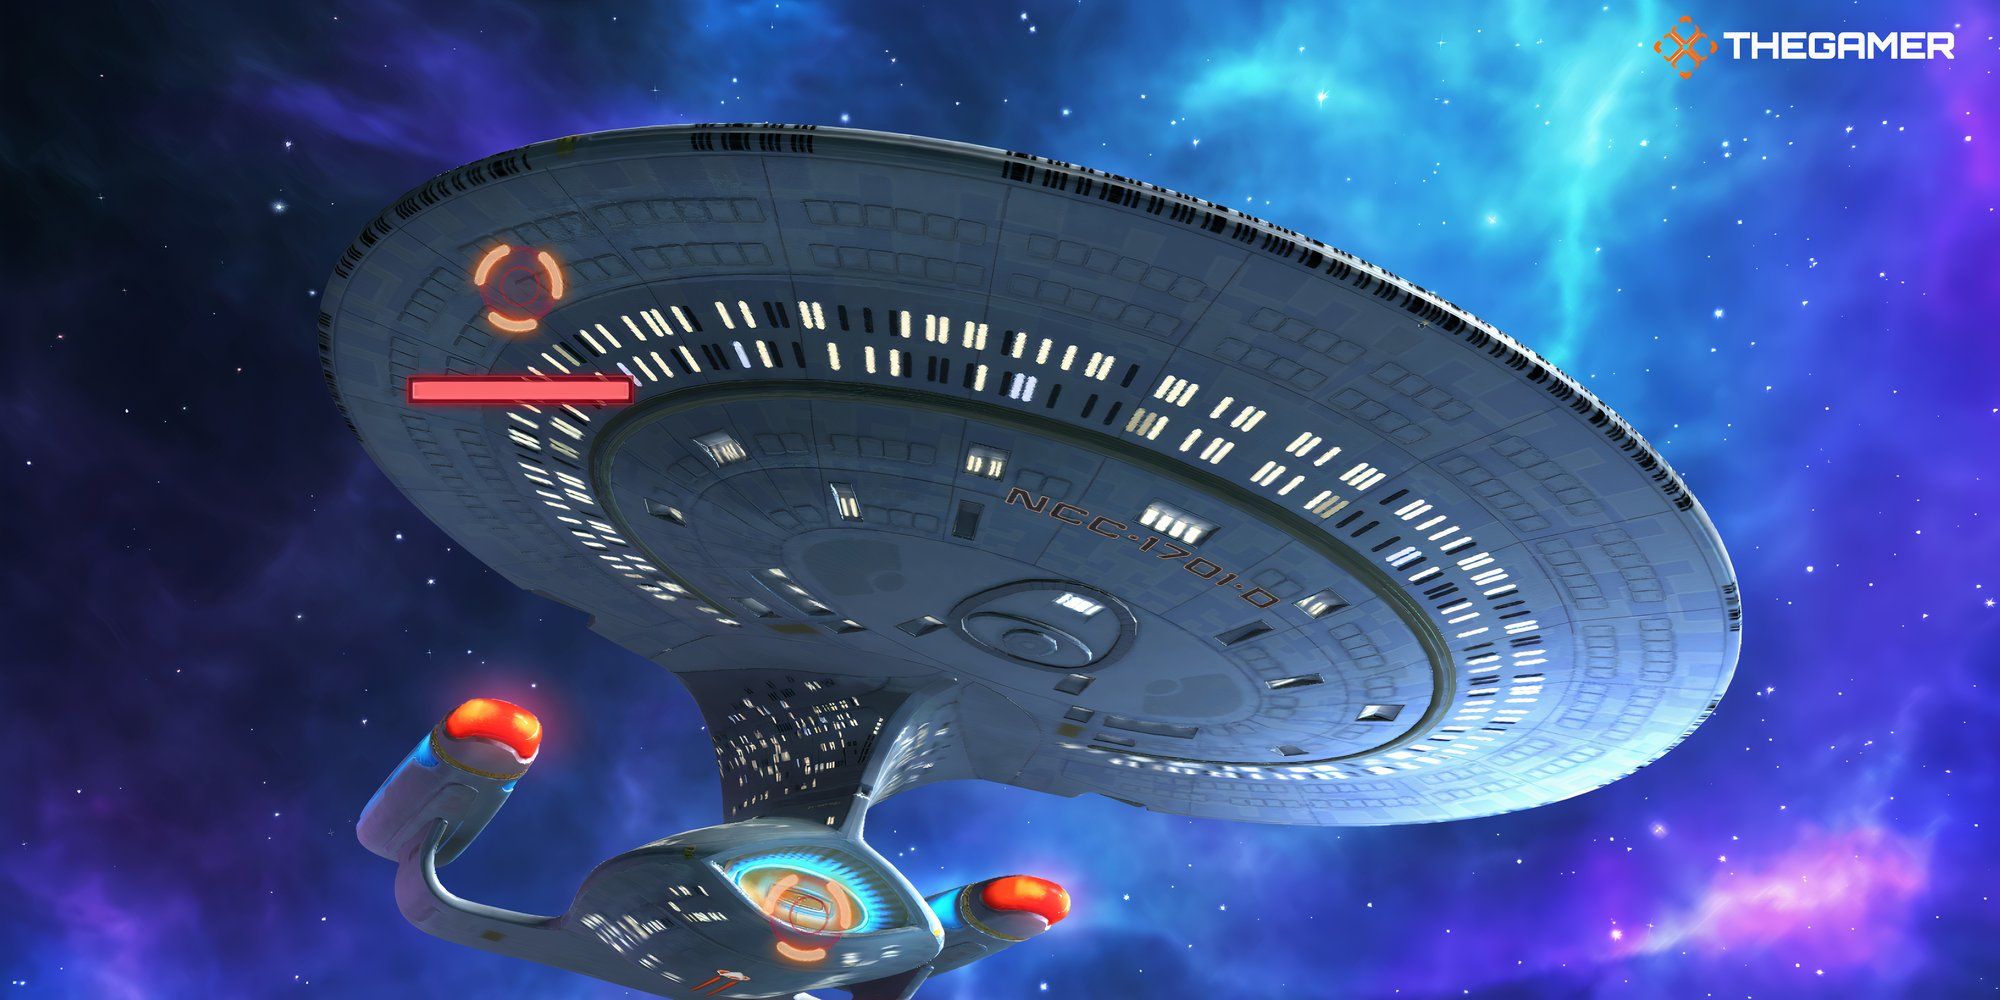 The USS Enterprise-D as seen in Star Trek Fleet Command